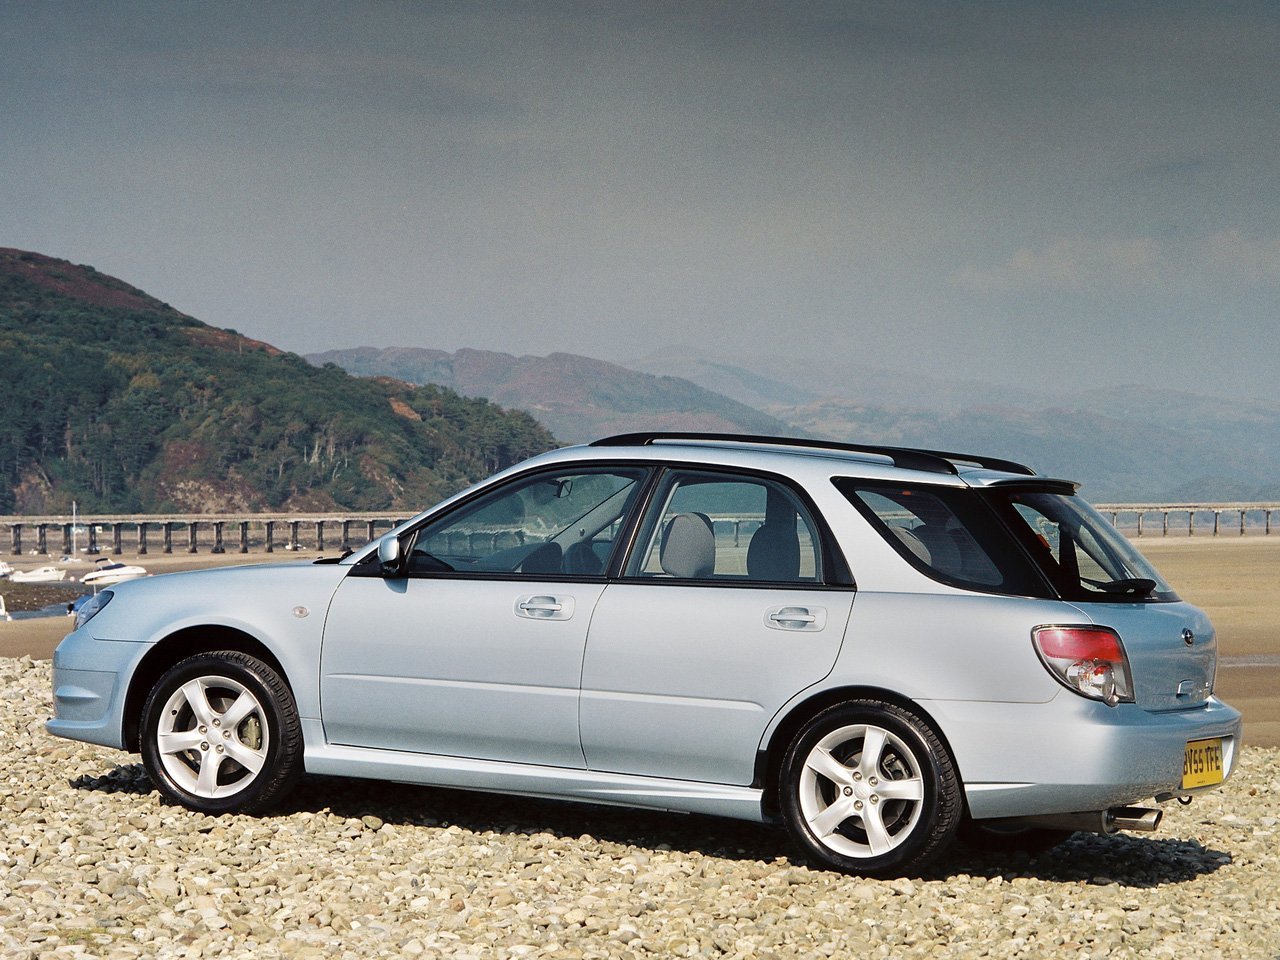 универсал Subaru Impreza 2005 - 2007г выпуска модификация 1.5 AT (100 л.с.)